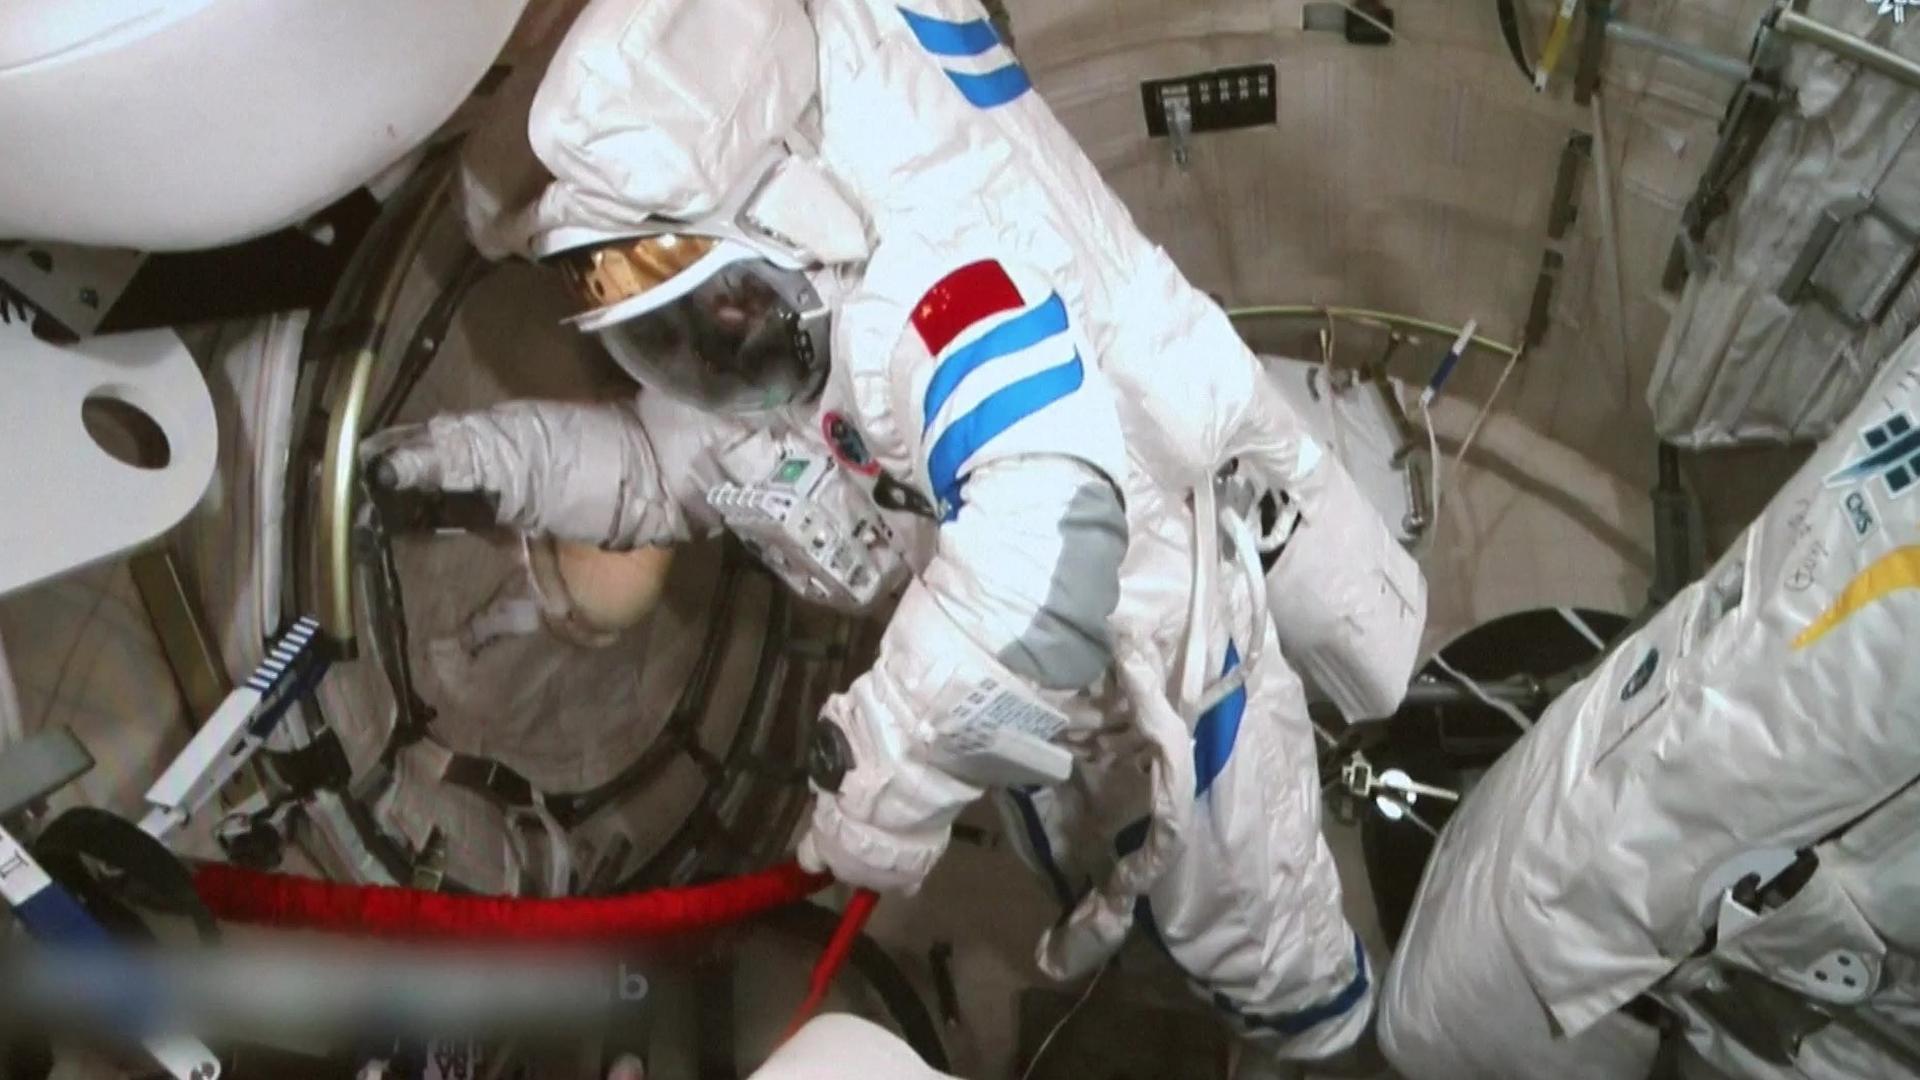 Первый астронавт вышедший в открытый космос. Выход Леонова в открытый космос. Shenzhou 14 Crew. Скафандр Космонавта Орлан.